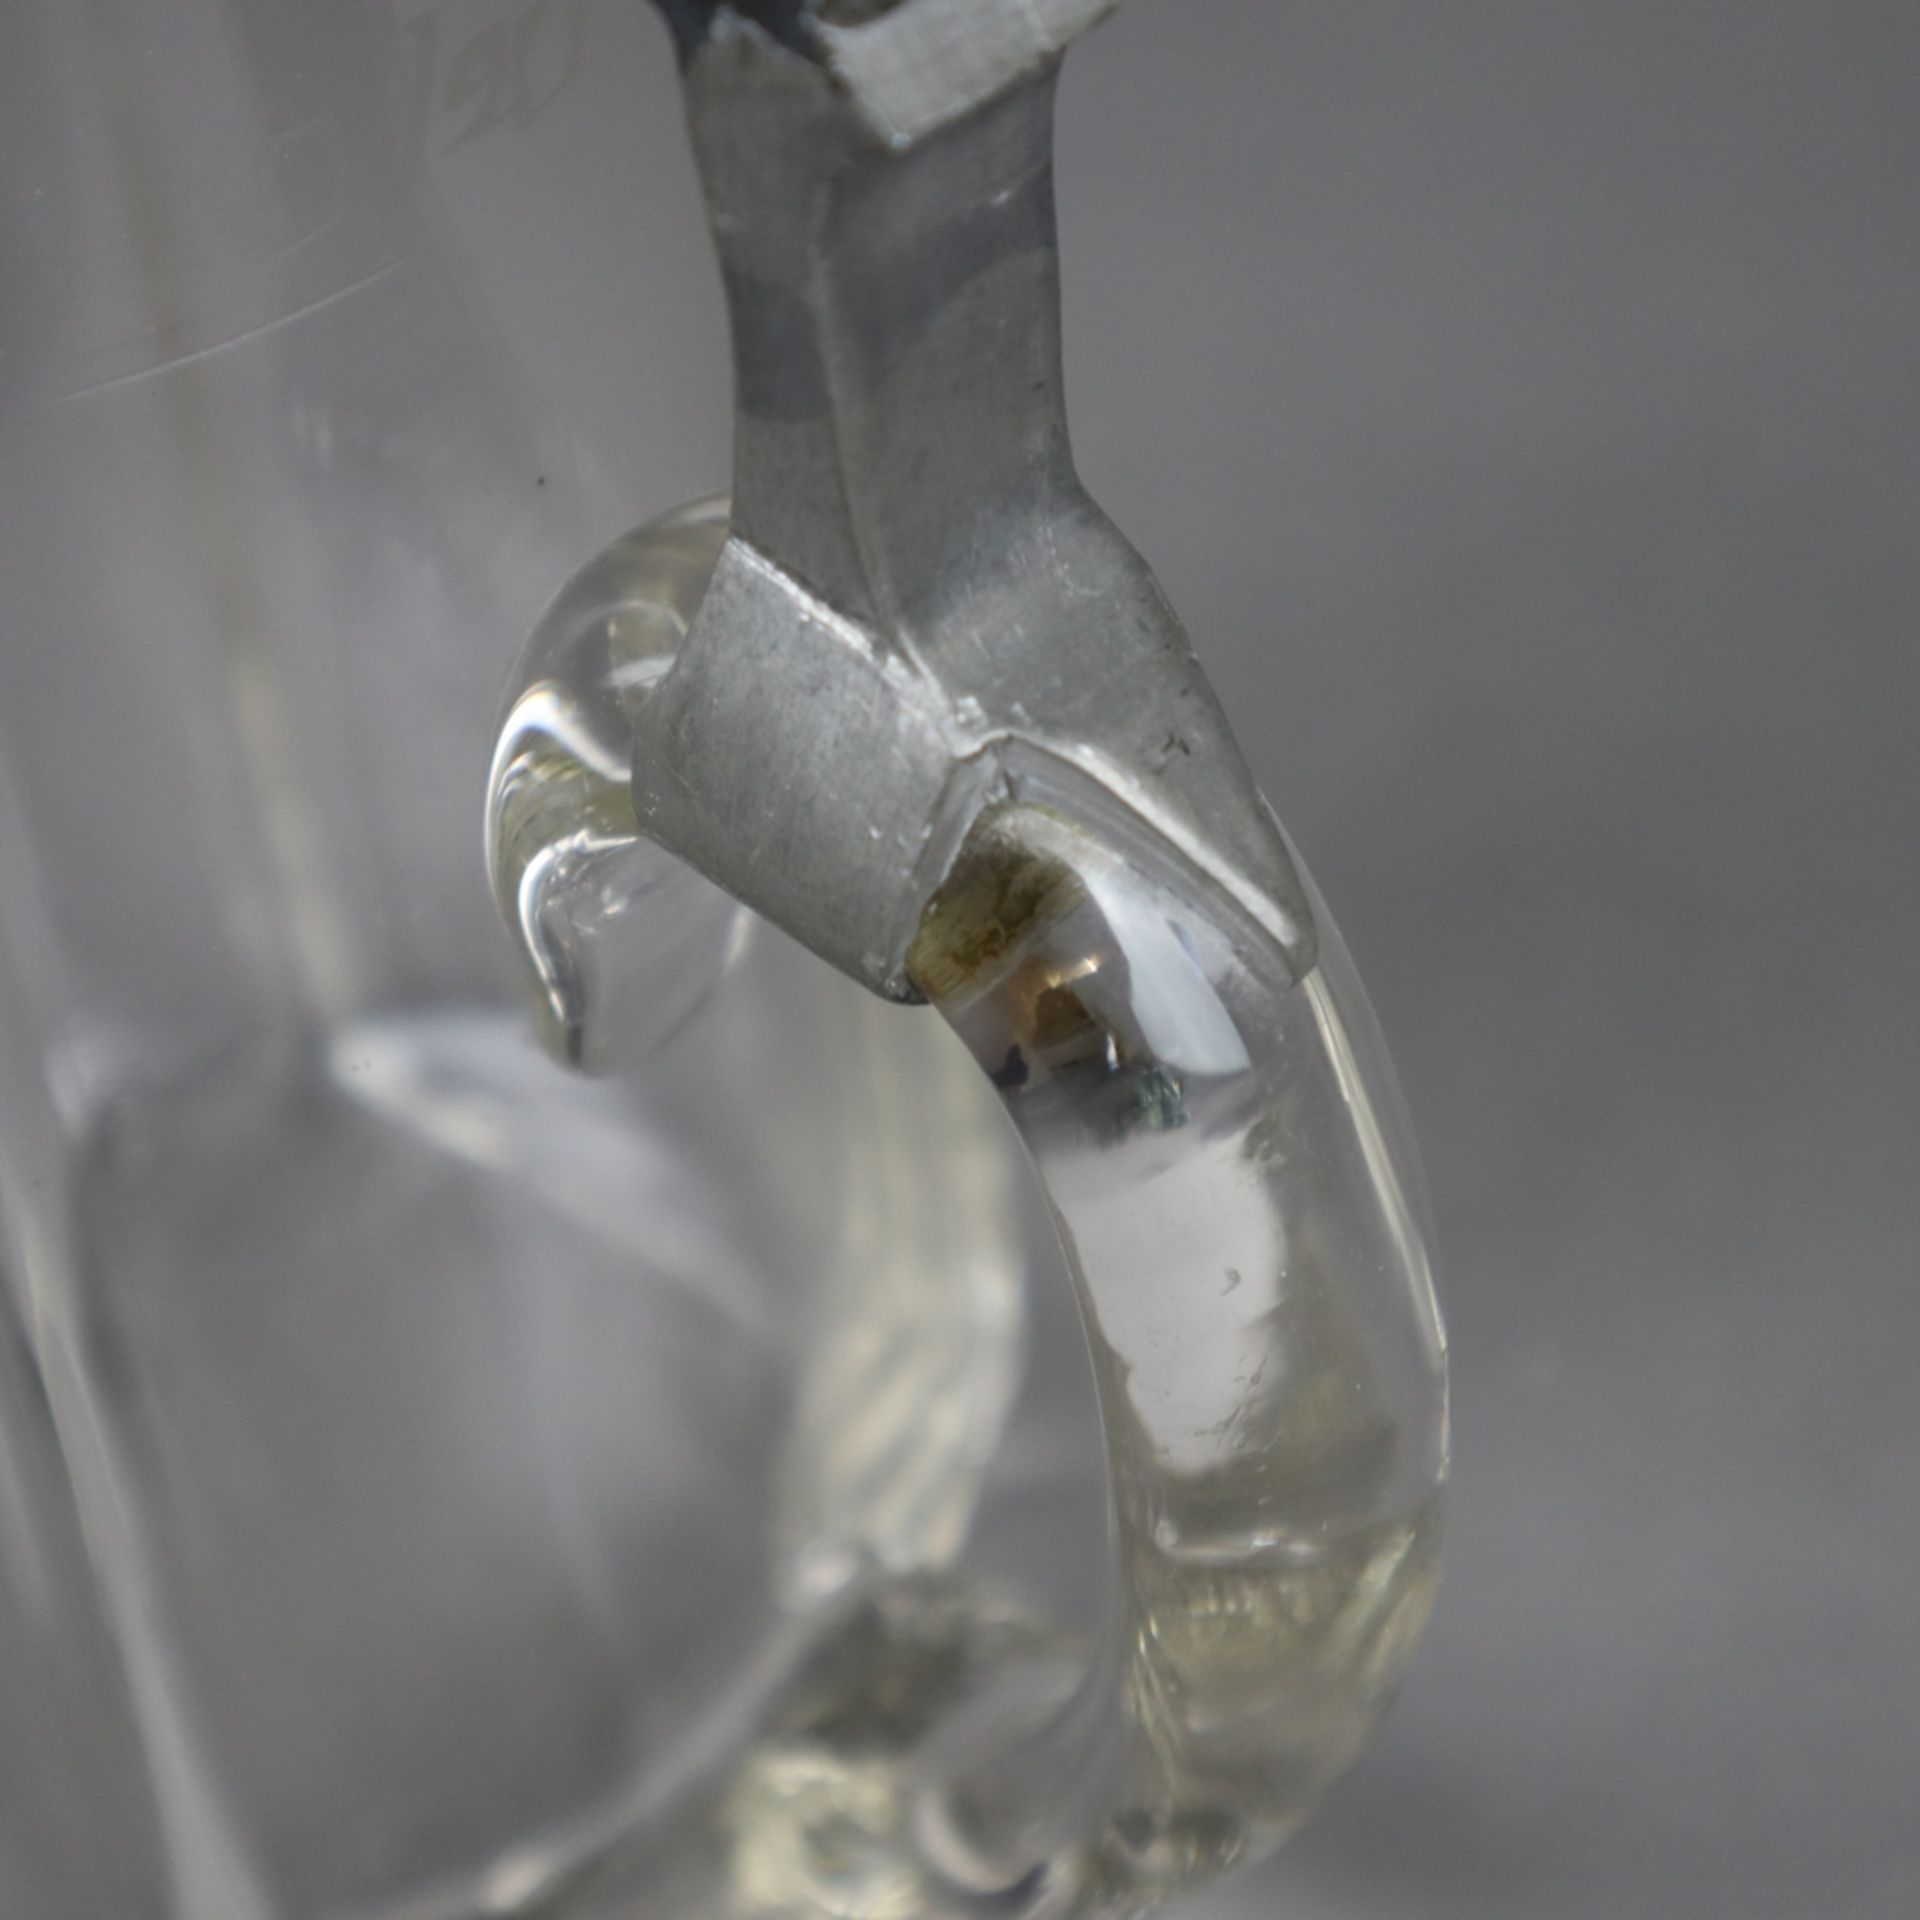 Jugendstil-Bierkrug - farbloses Glas, konischer Körper mit Rillendekor, Zinndeckel mit Jugendstil-R - Bild 4 aus 6